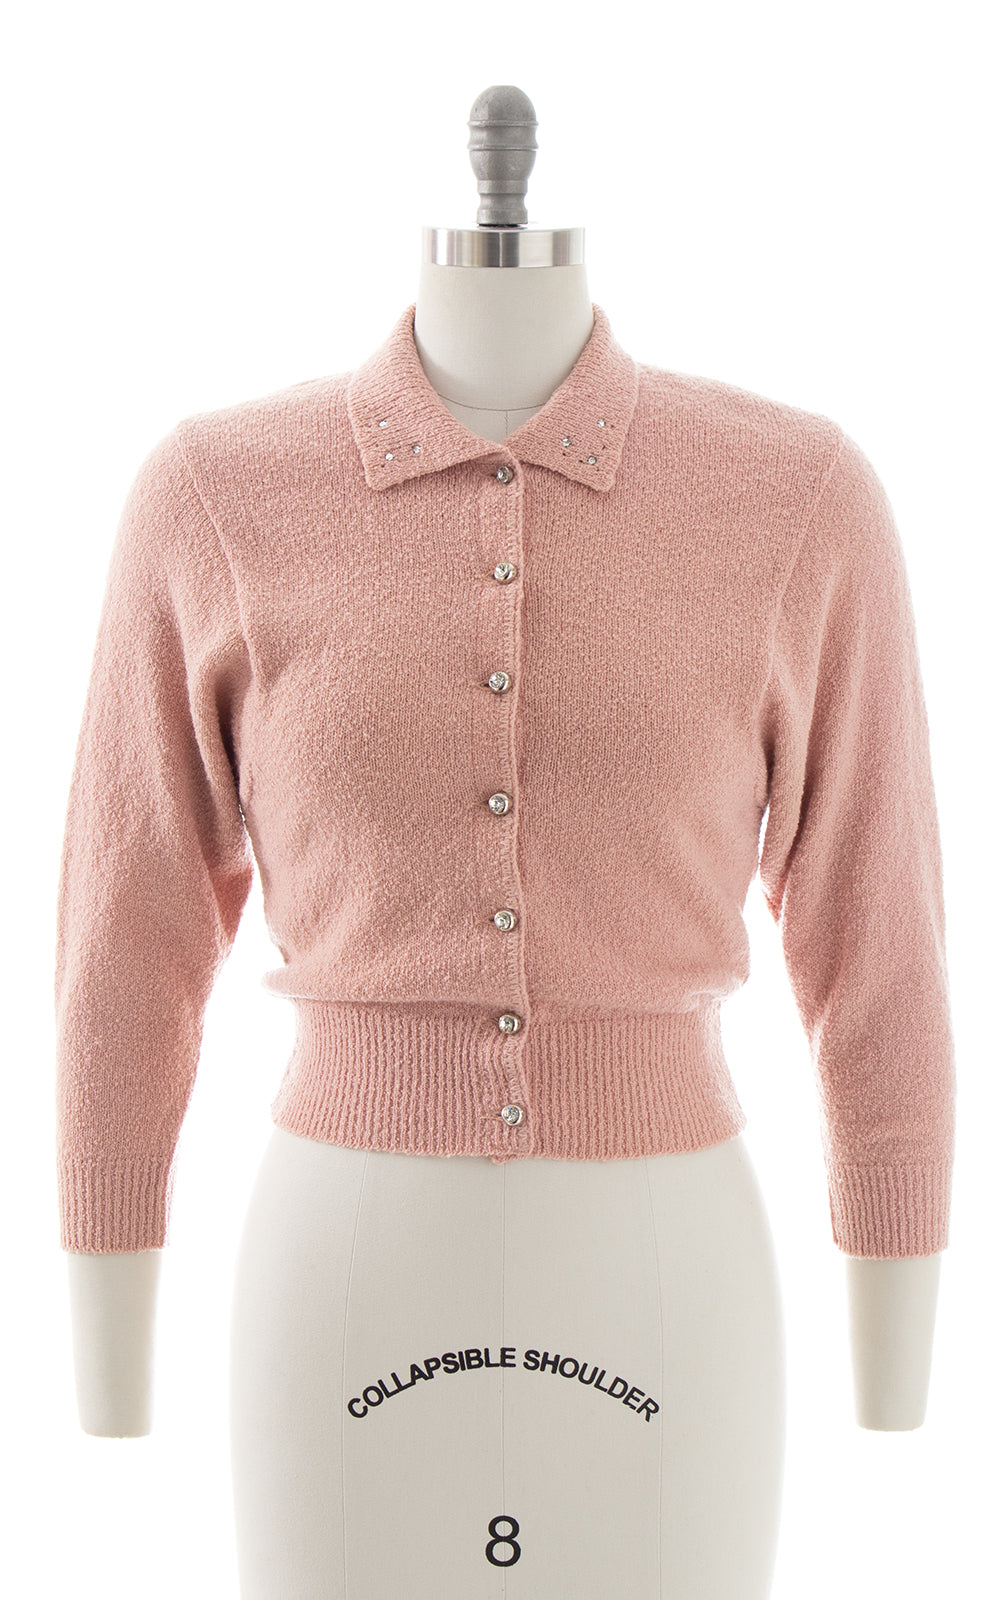 1940s 1950s Rhinestone & Knit Wool Cardigan | x-small/small